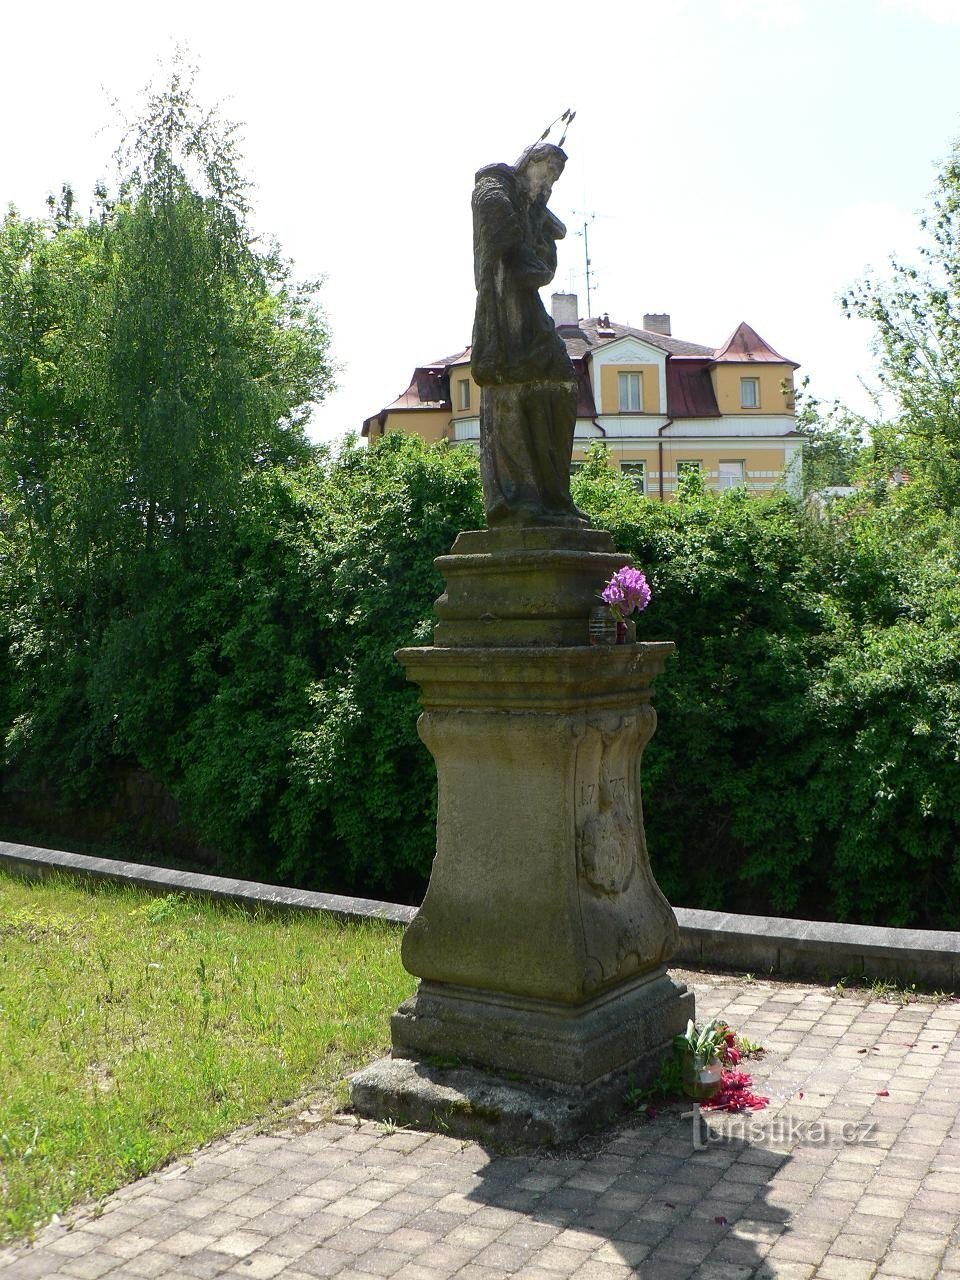 Františkovy Lázně, statue of St. John of Nepomuk